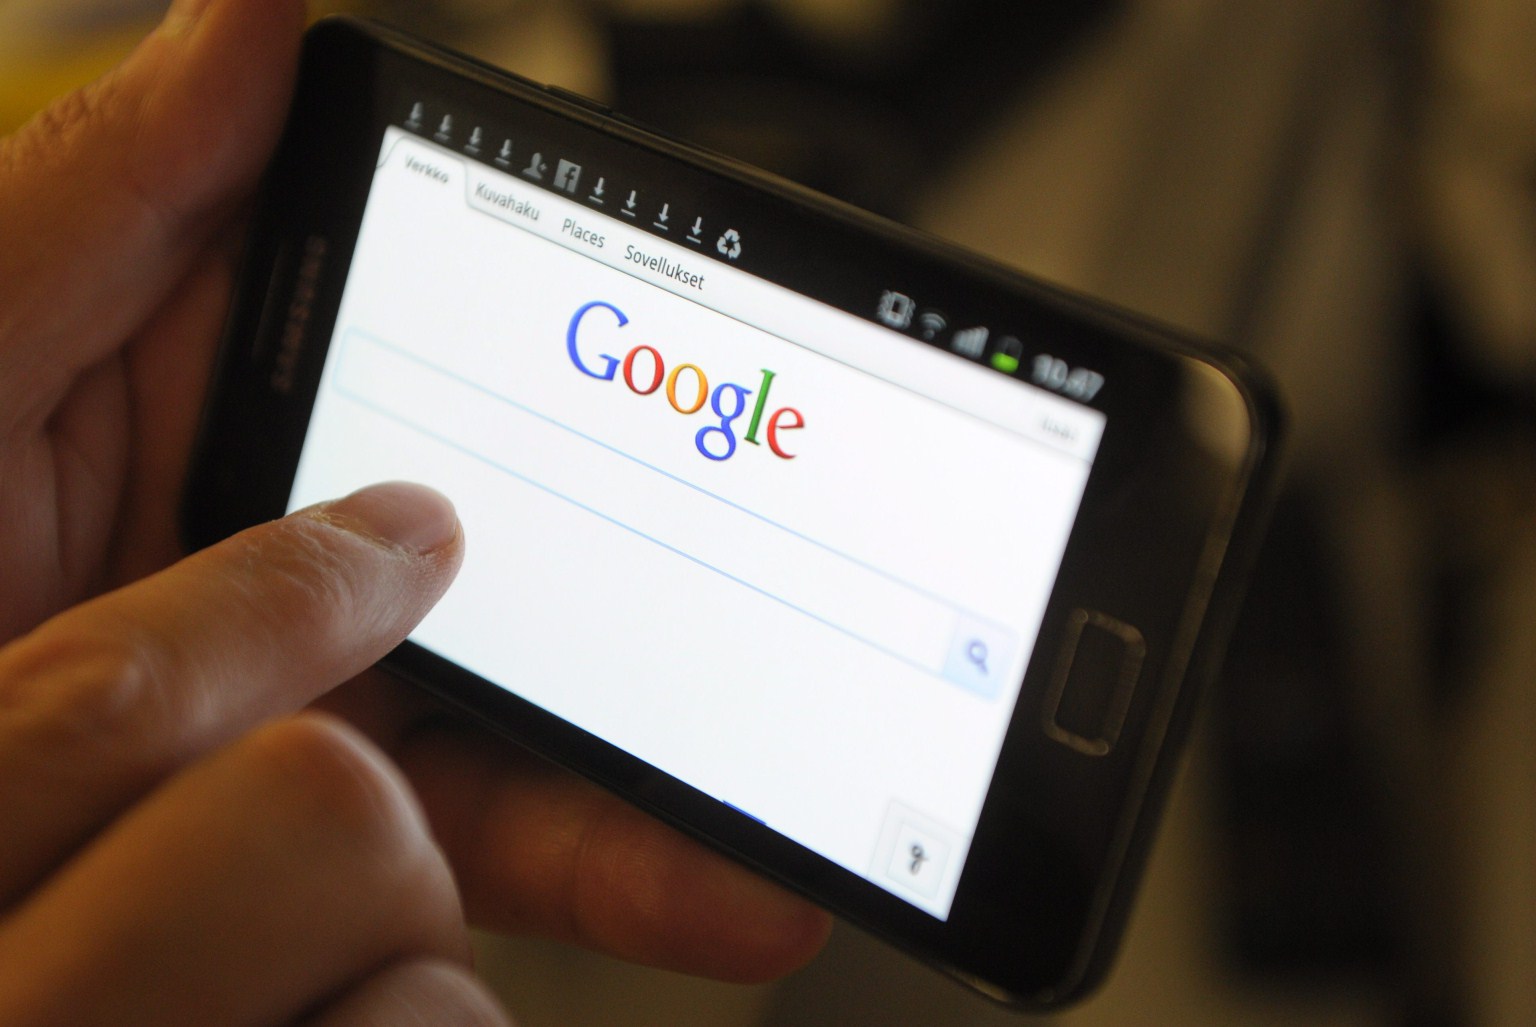 kho: googlen sai määrätä poistamaan henkilöä koskevat hakutuloslinkit